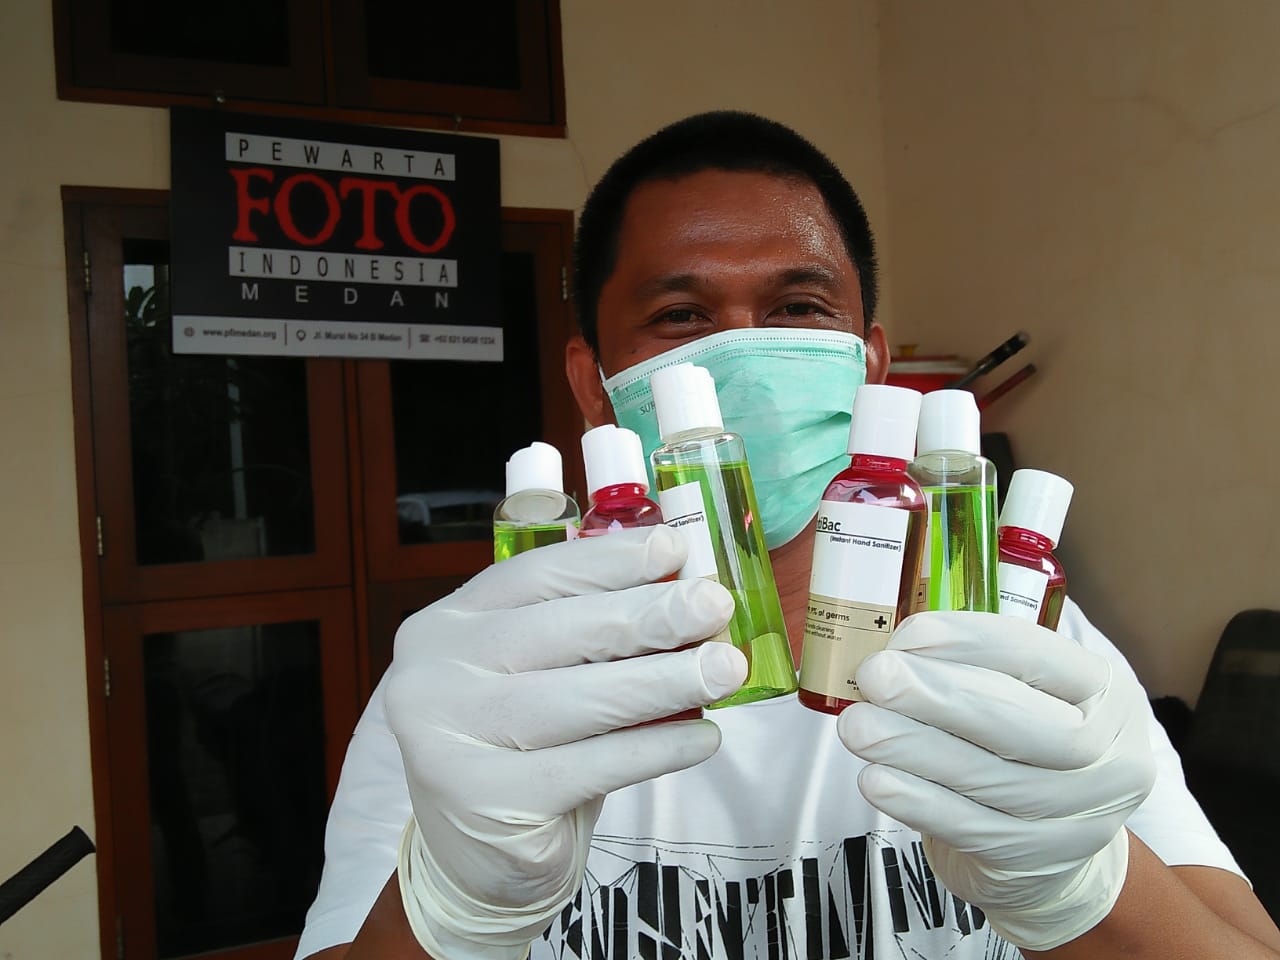 Pewarta Foto Indonesia Medan, Bagikan Masker Hingga Vitamin kepada Anggota